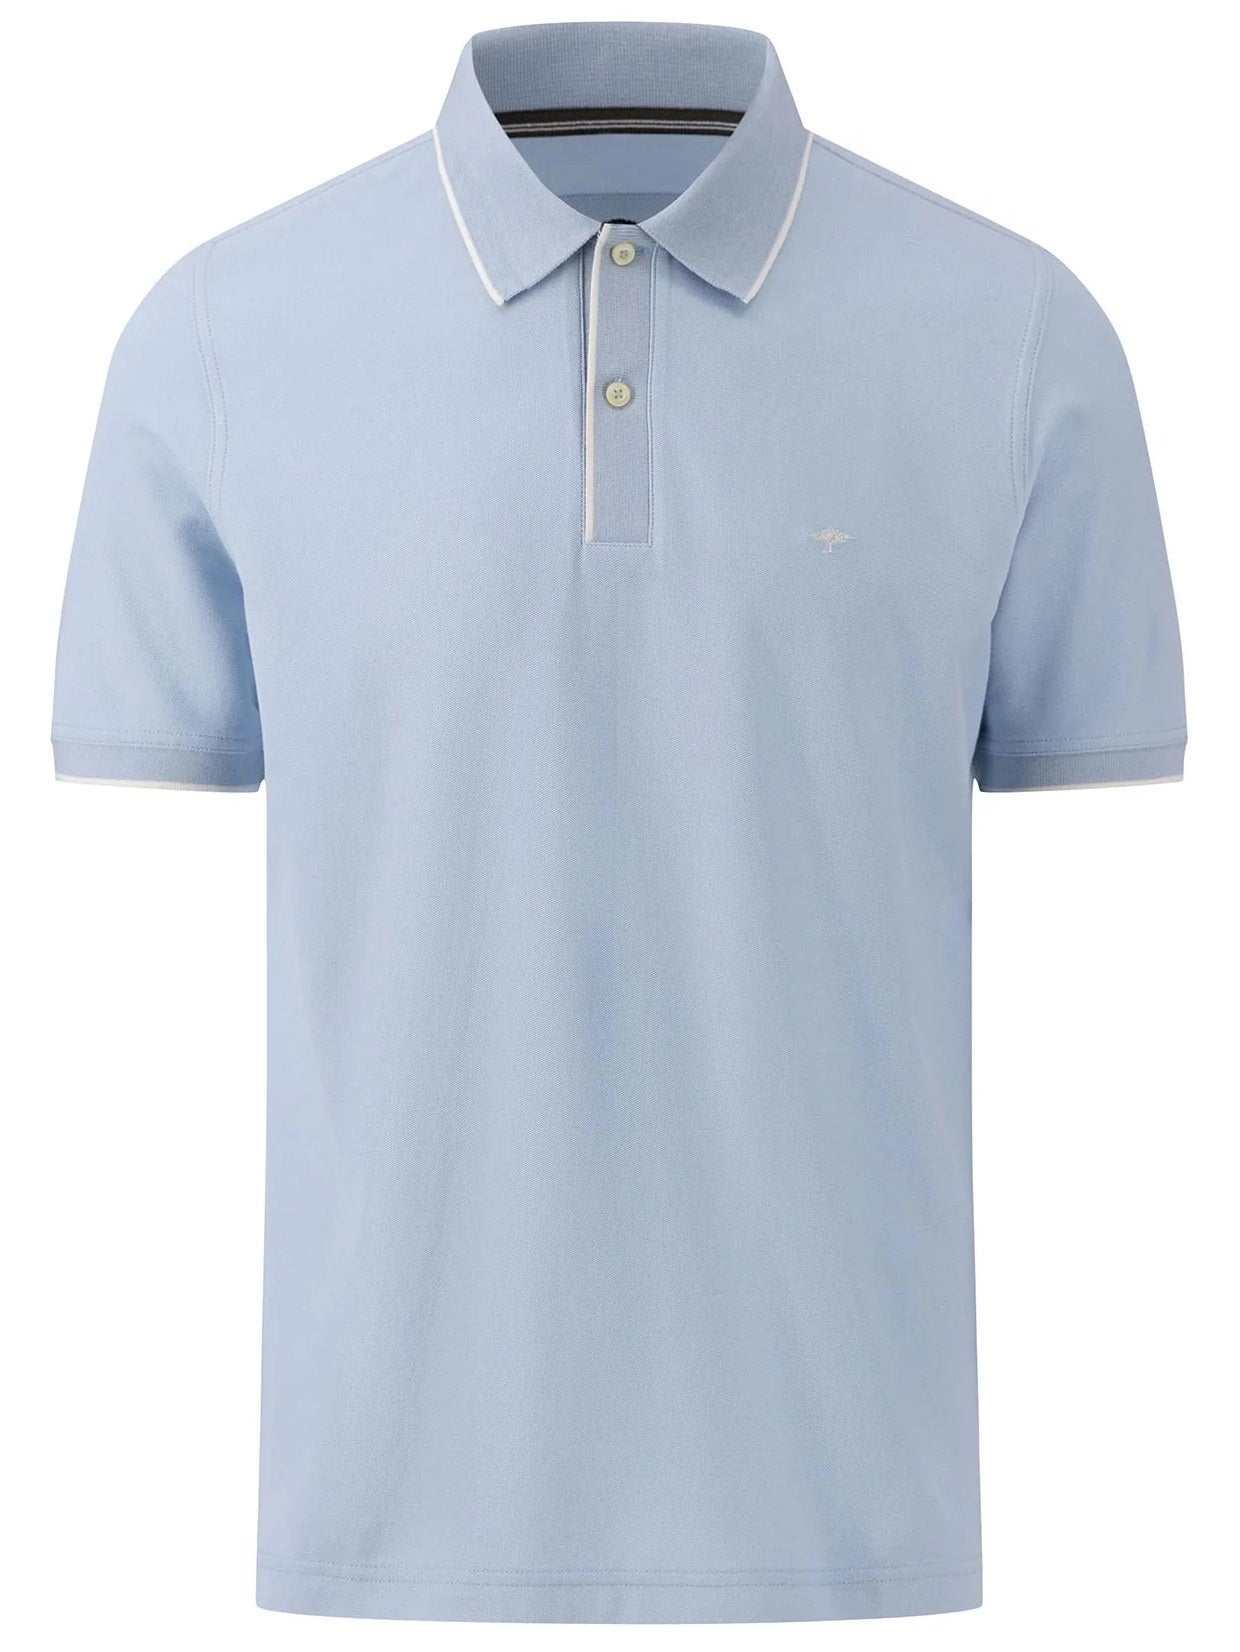 40% OFF - FYNCH HATTON Modern-Fit Polo Shirt - Men's Cotton Pique – Summer Breeze - Size: XL